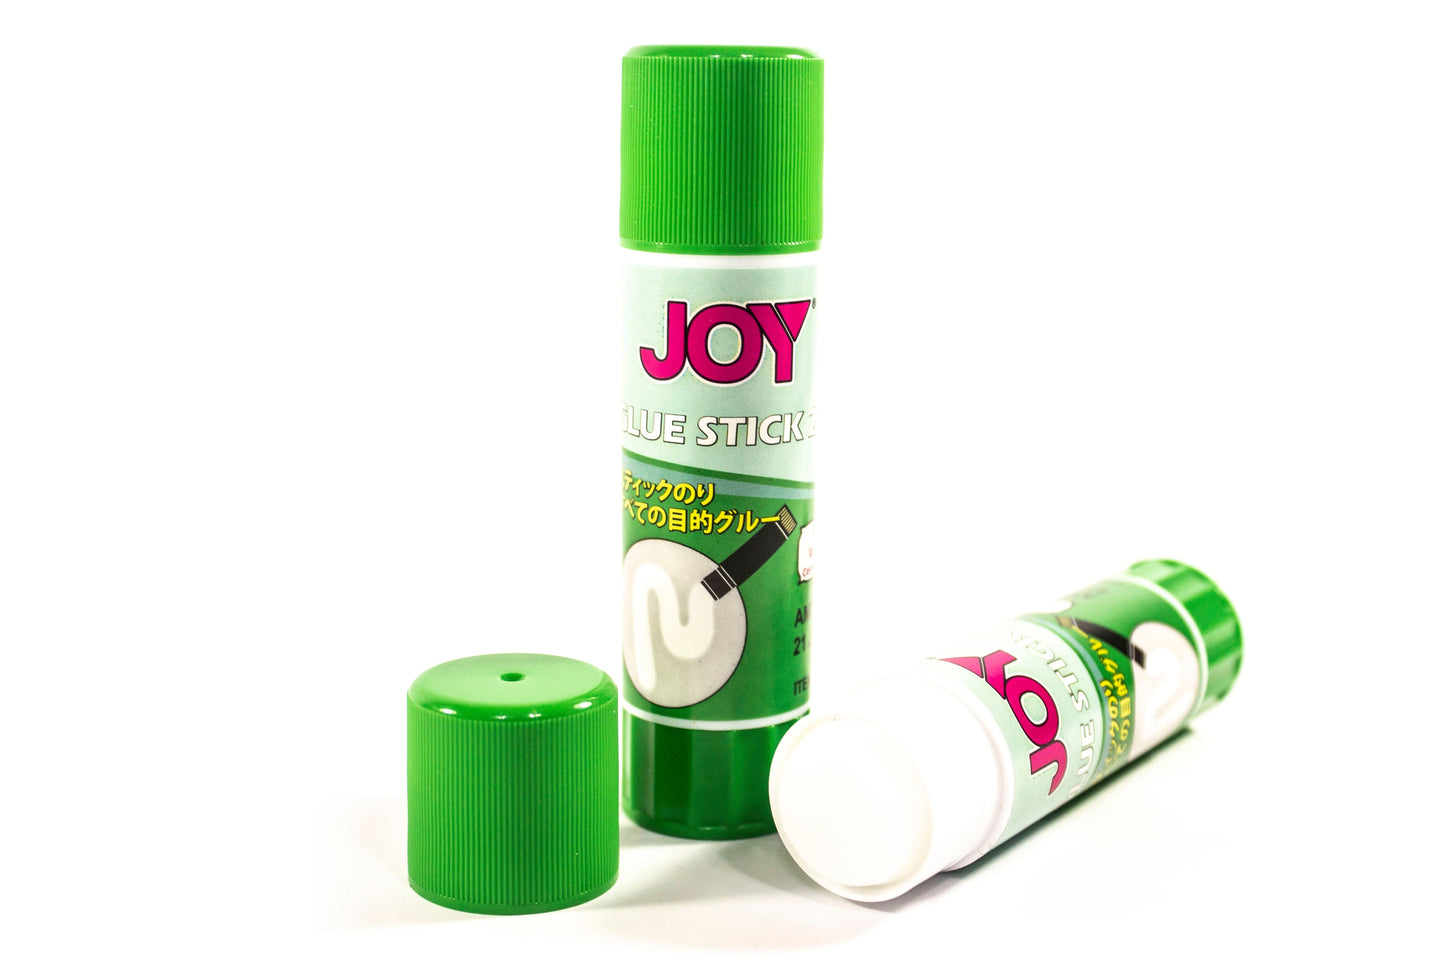 Joy Glue Stick 21g (12pcs)